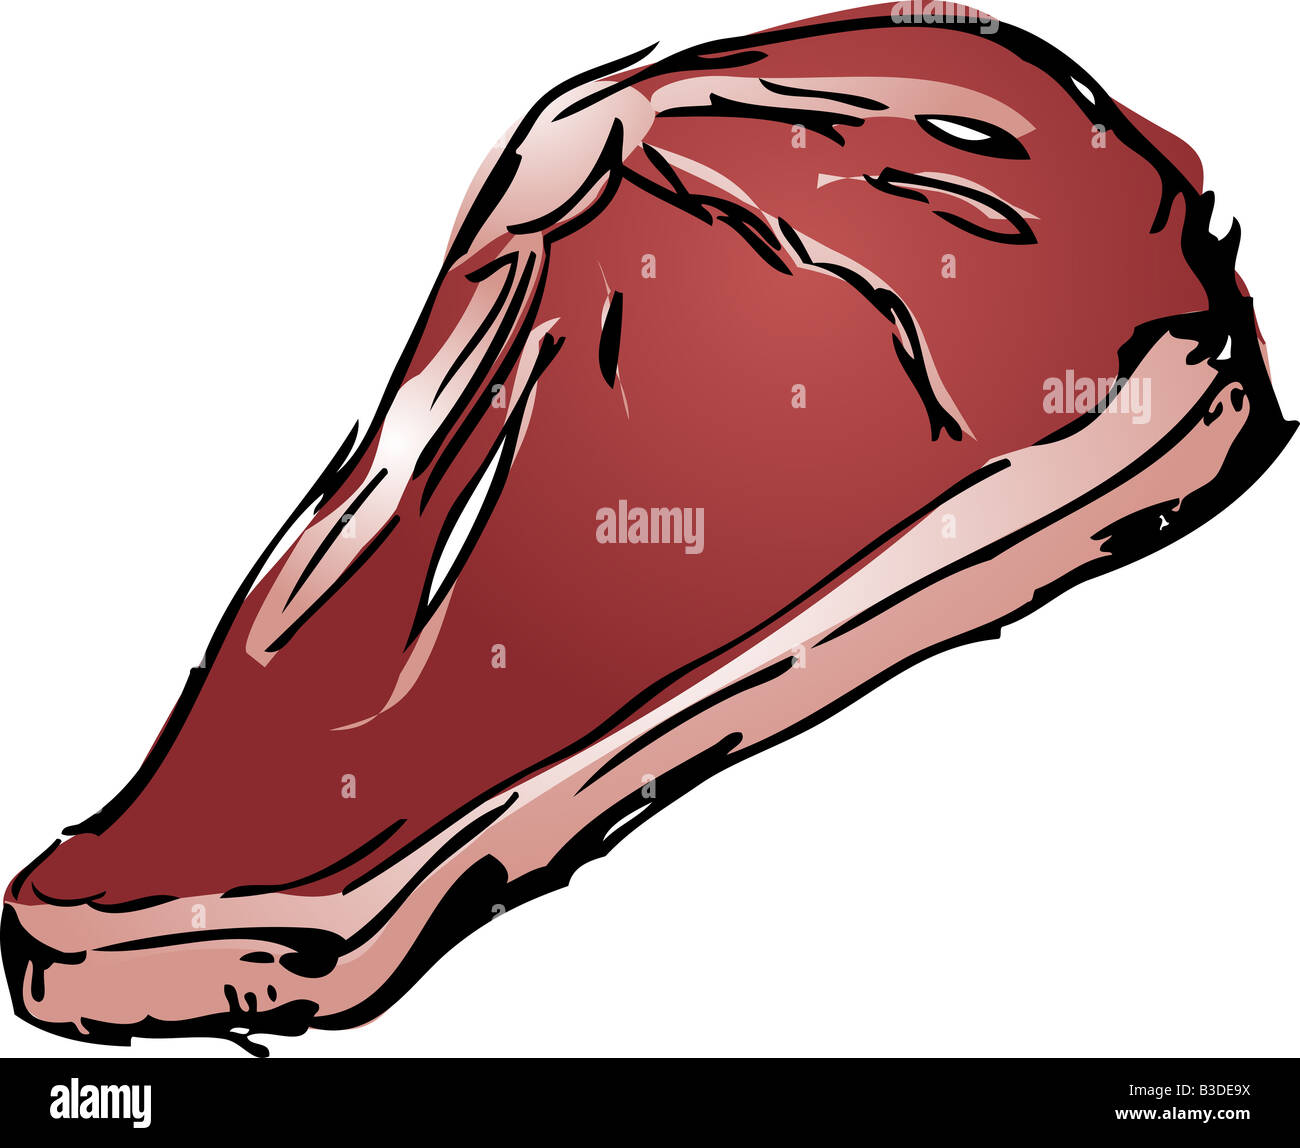 Steak Vintage sketch with beef and pork chops  Stock Illustration  56590693  PIXTA